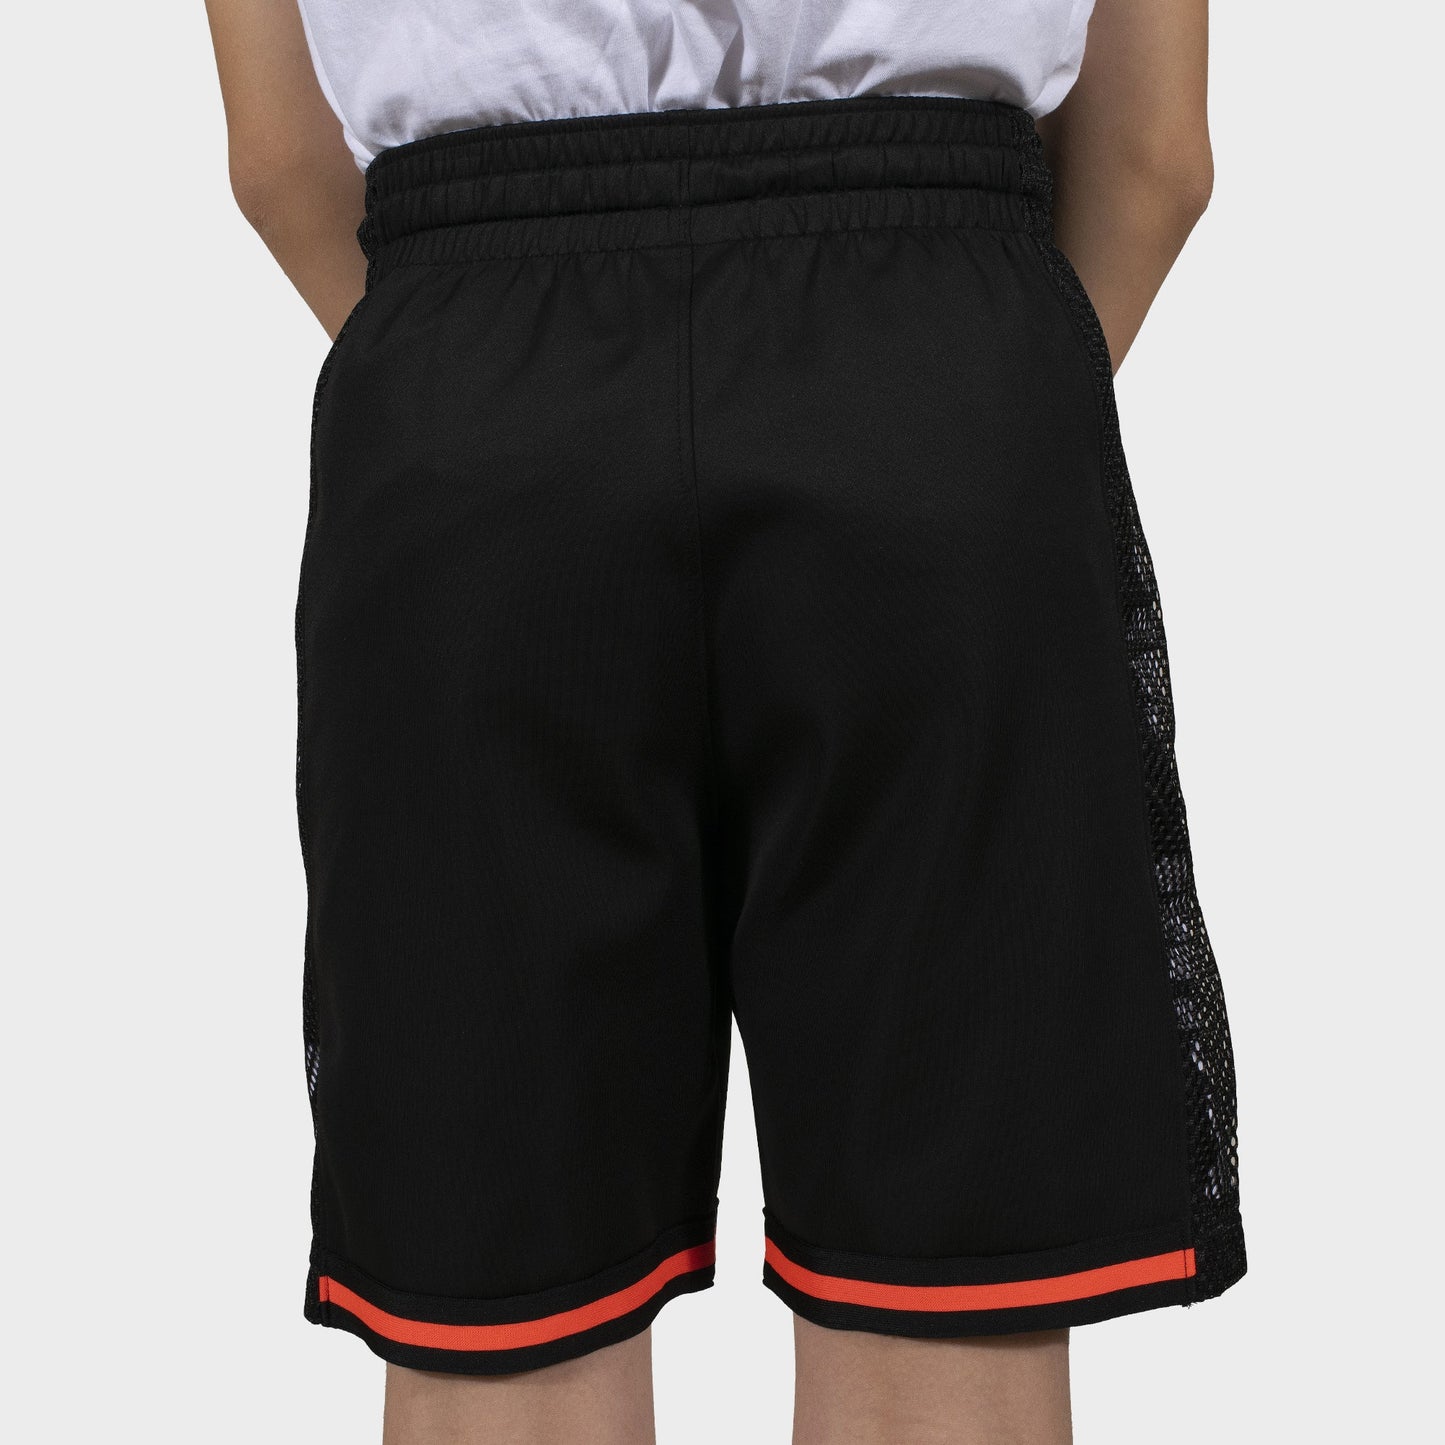 Jump Man Basketball Black Shorts